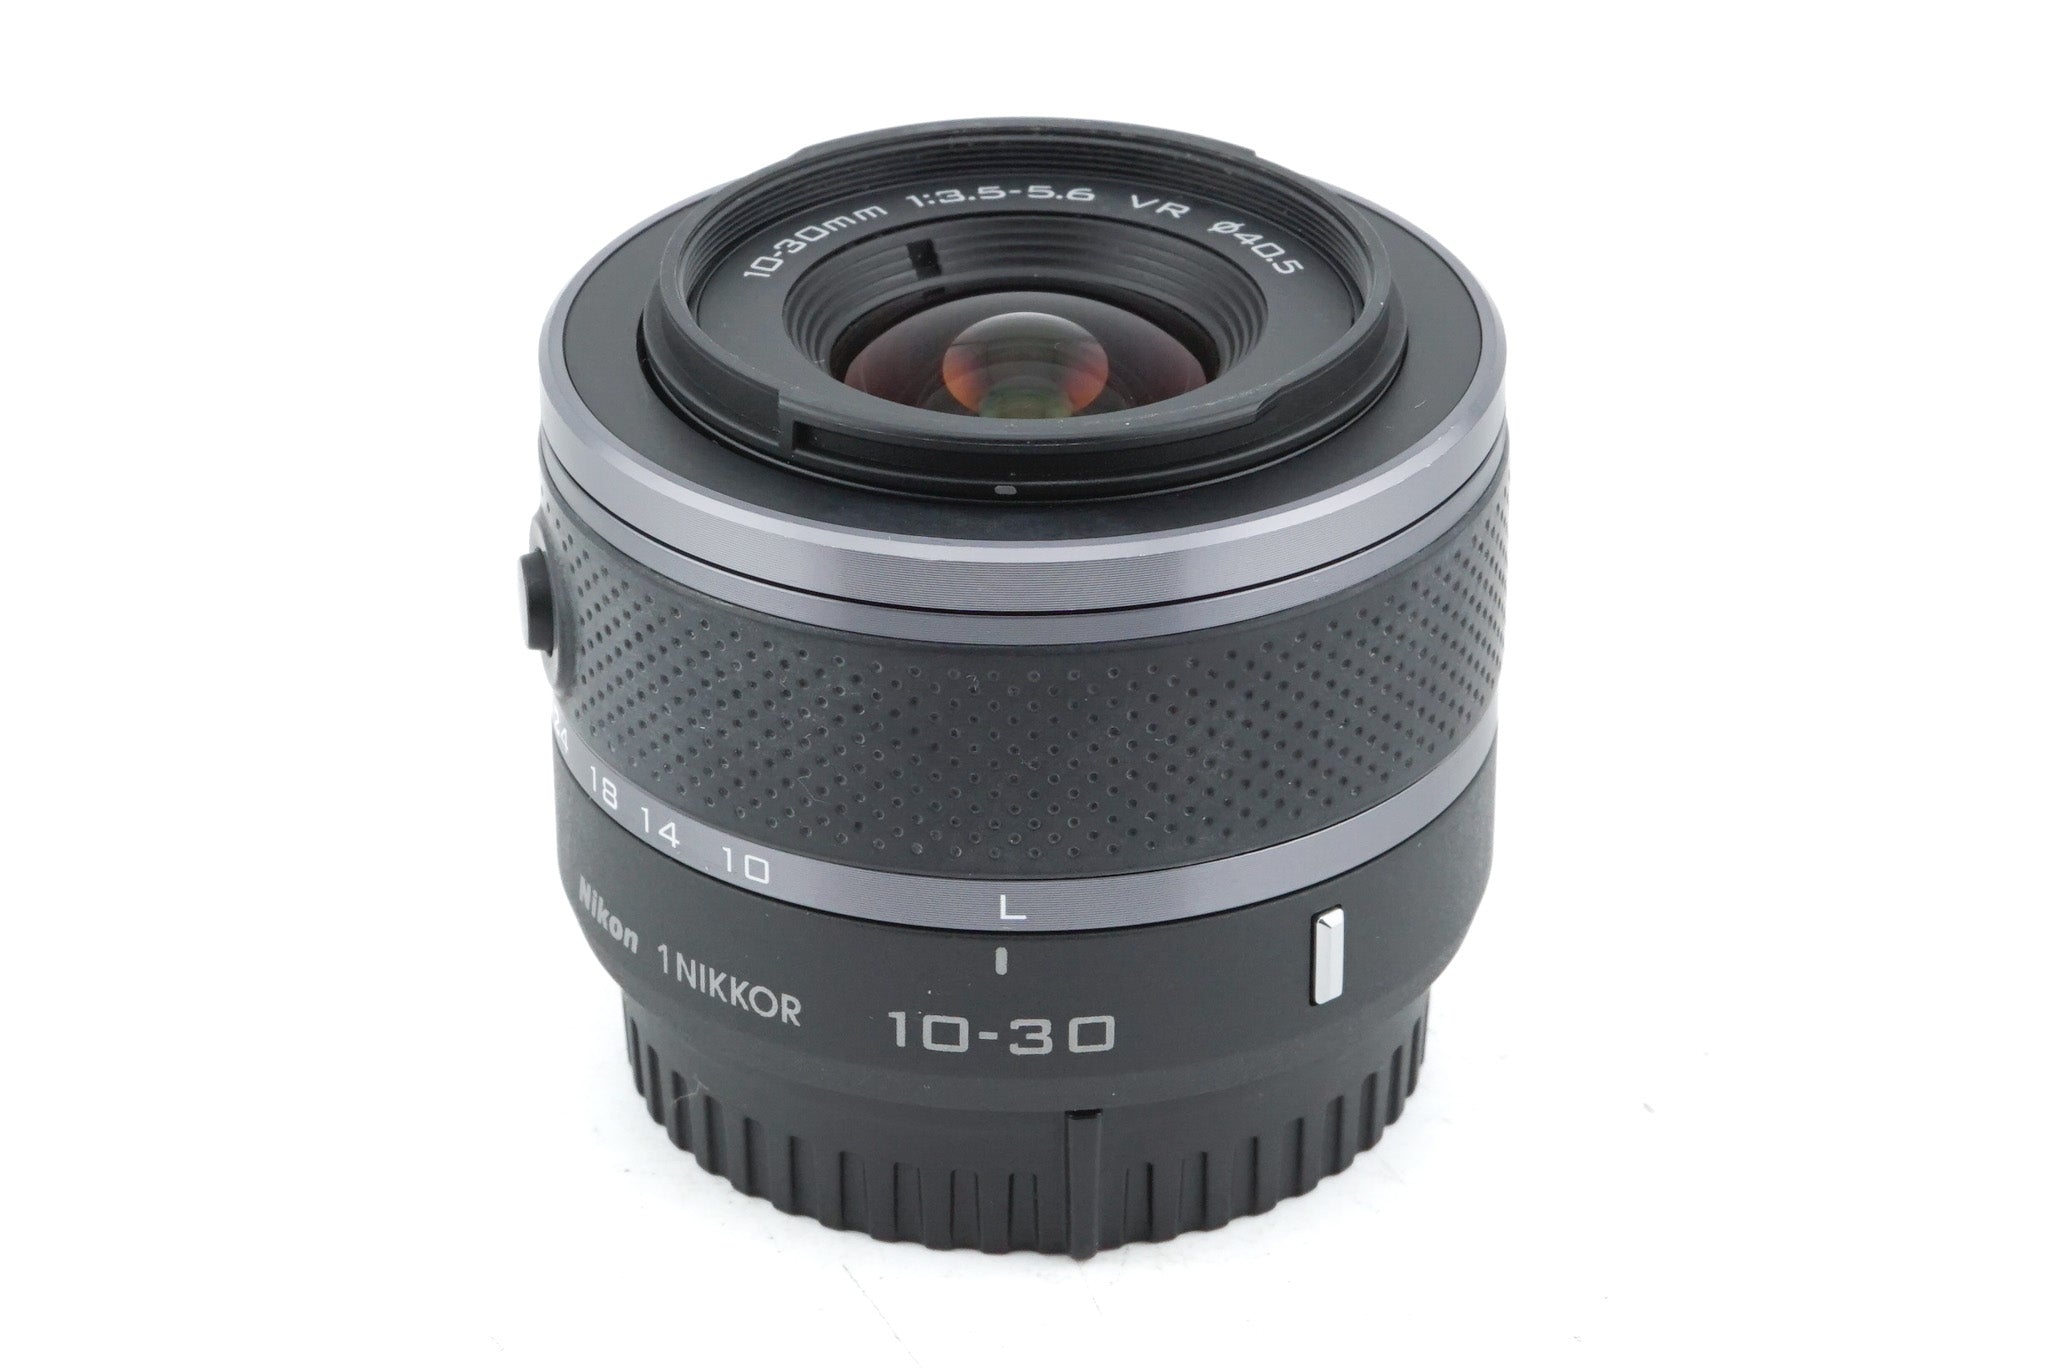 Nikon 10-30mm f3.5-5.6 VR Nikkor 1 - Lens